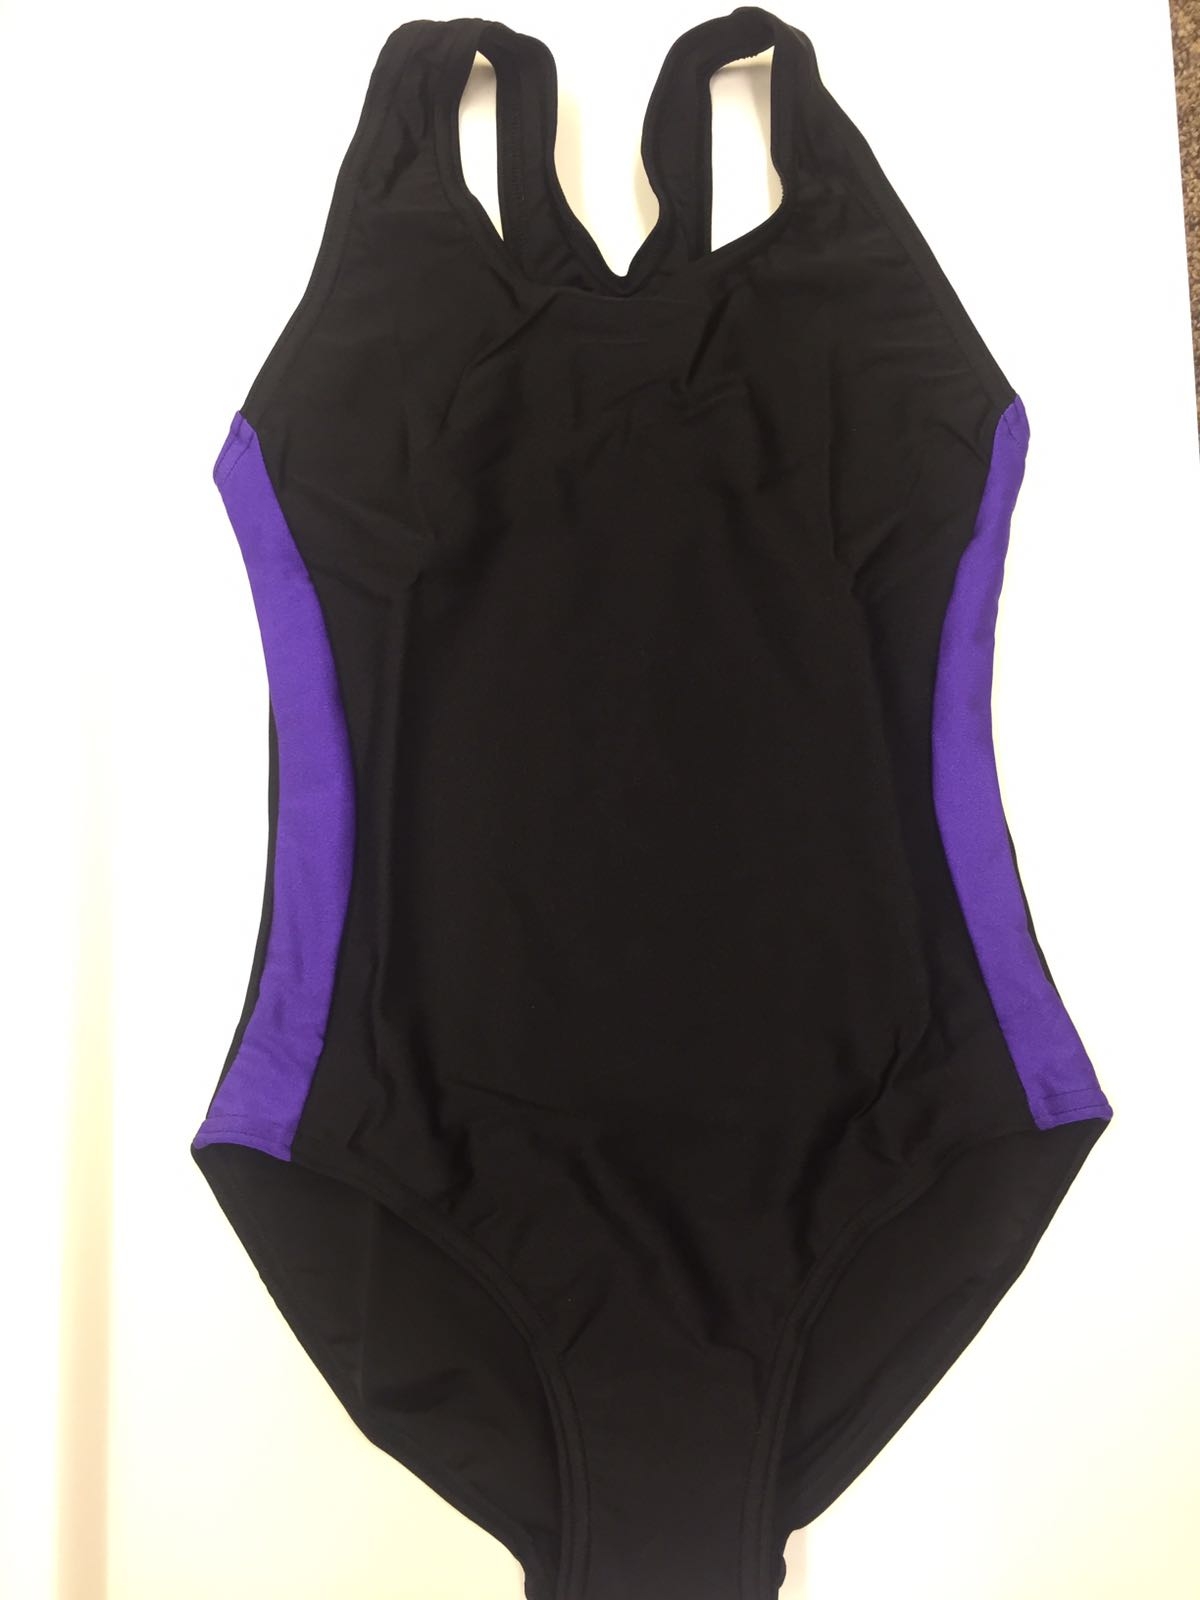 Rosemead Swimsuit – Thomas School Wear